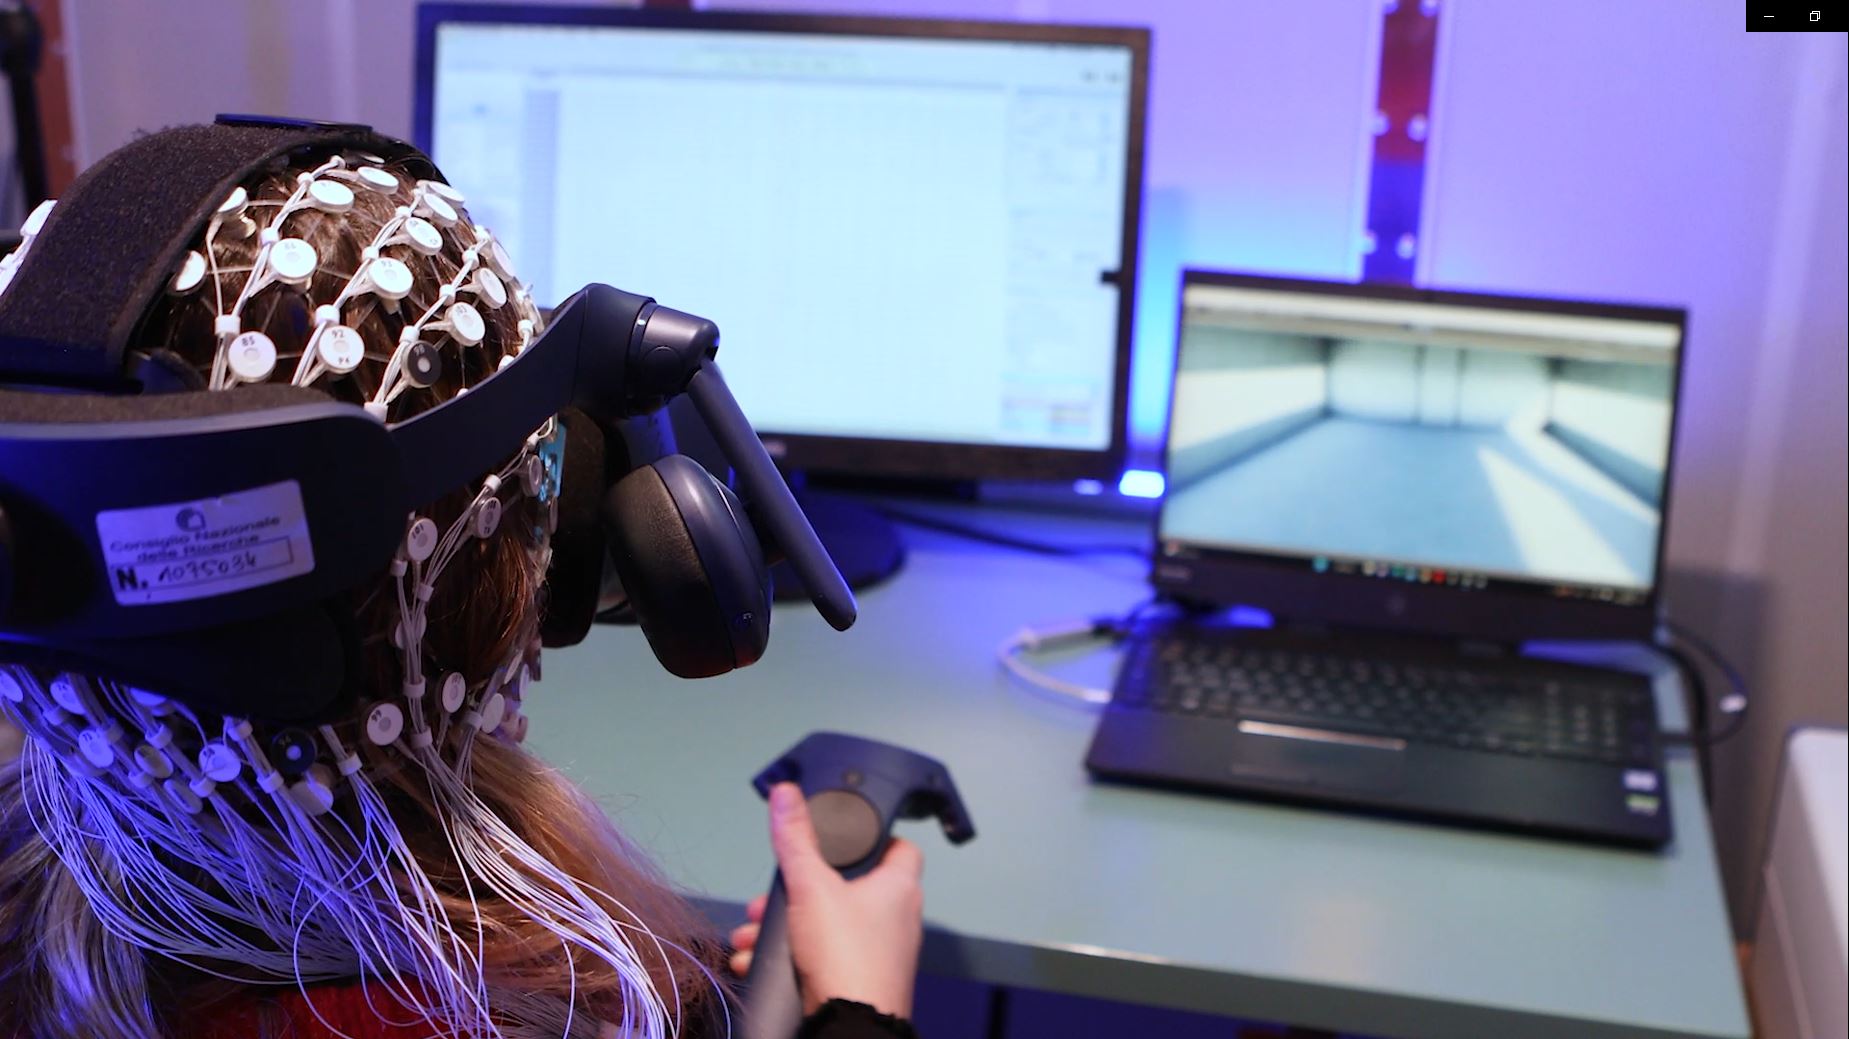 Lo spazio delle relazioni - EEG measurments in VR